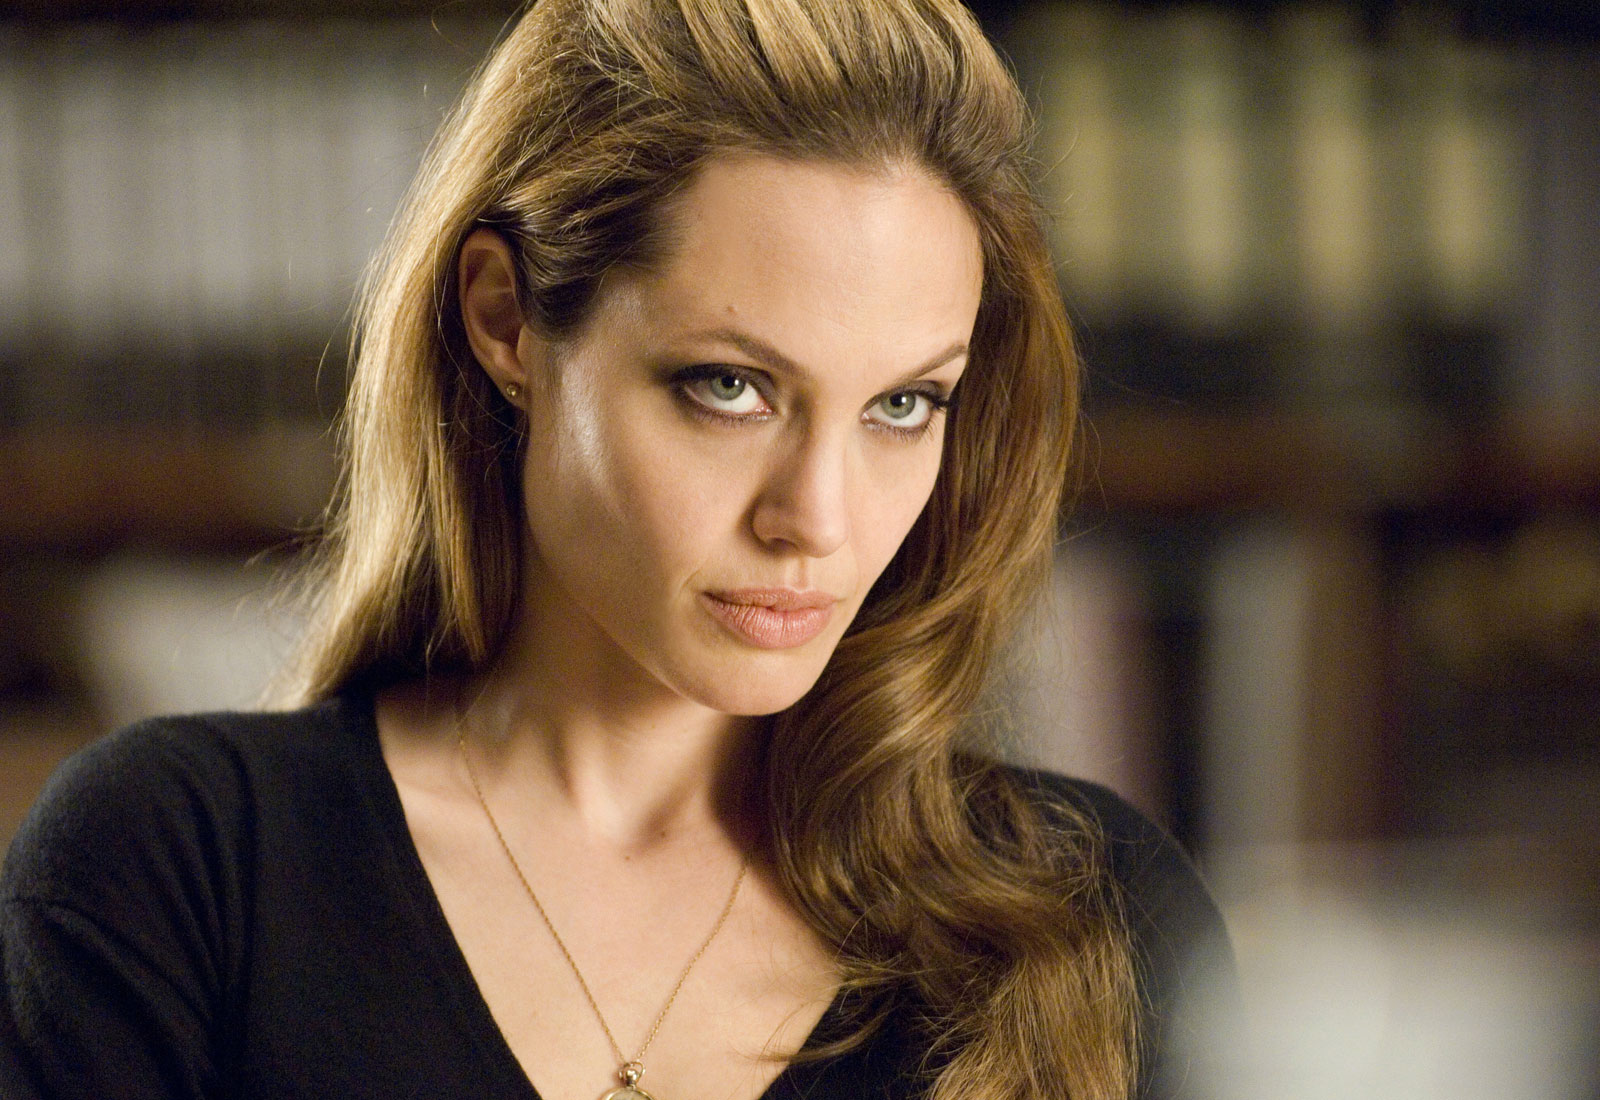 Brad Pitt está com medo de Angelina Jolie; veja o motivo